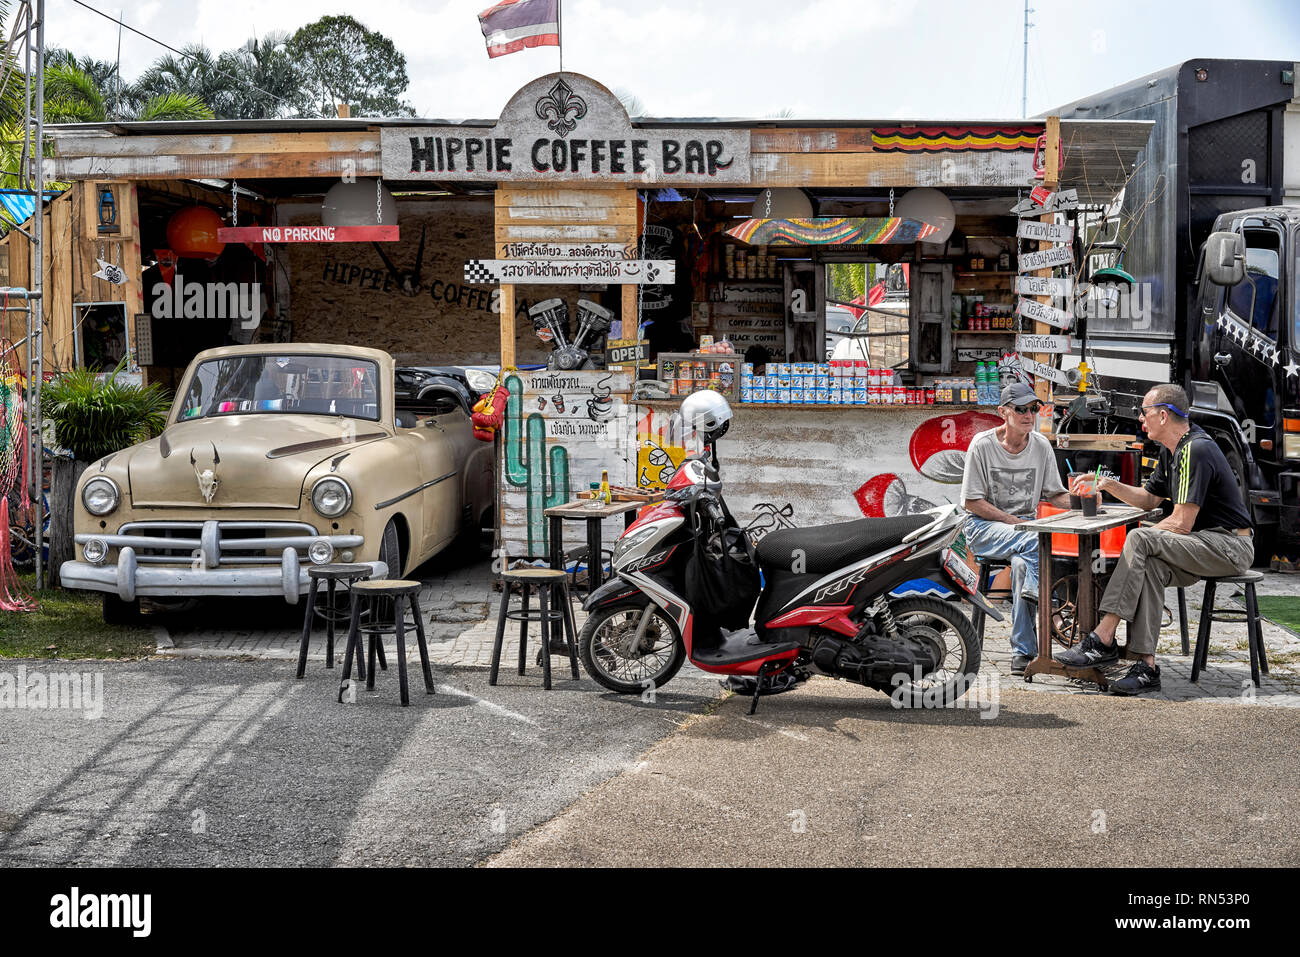 Coffee bar ad una riunione di motociclisti. Pattaya Thailandia del sud-est asiatico Foto Stock